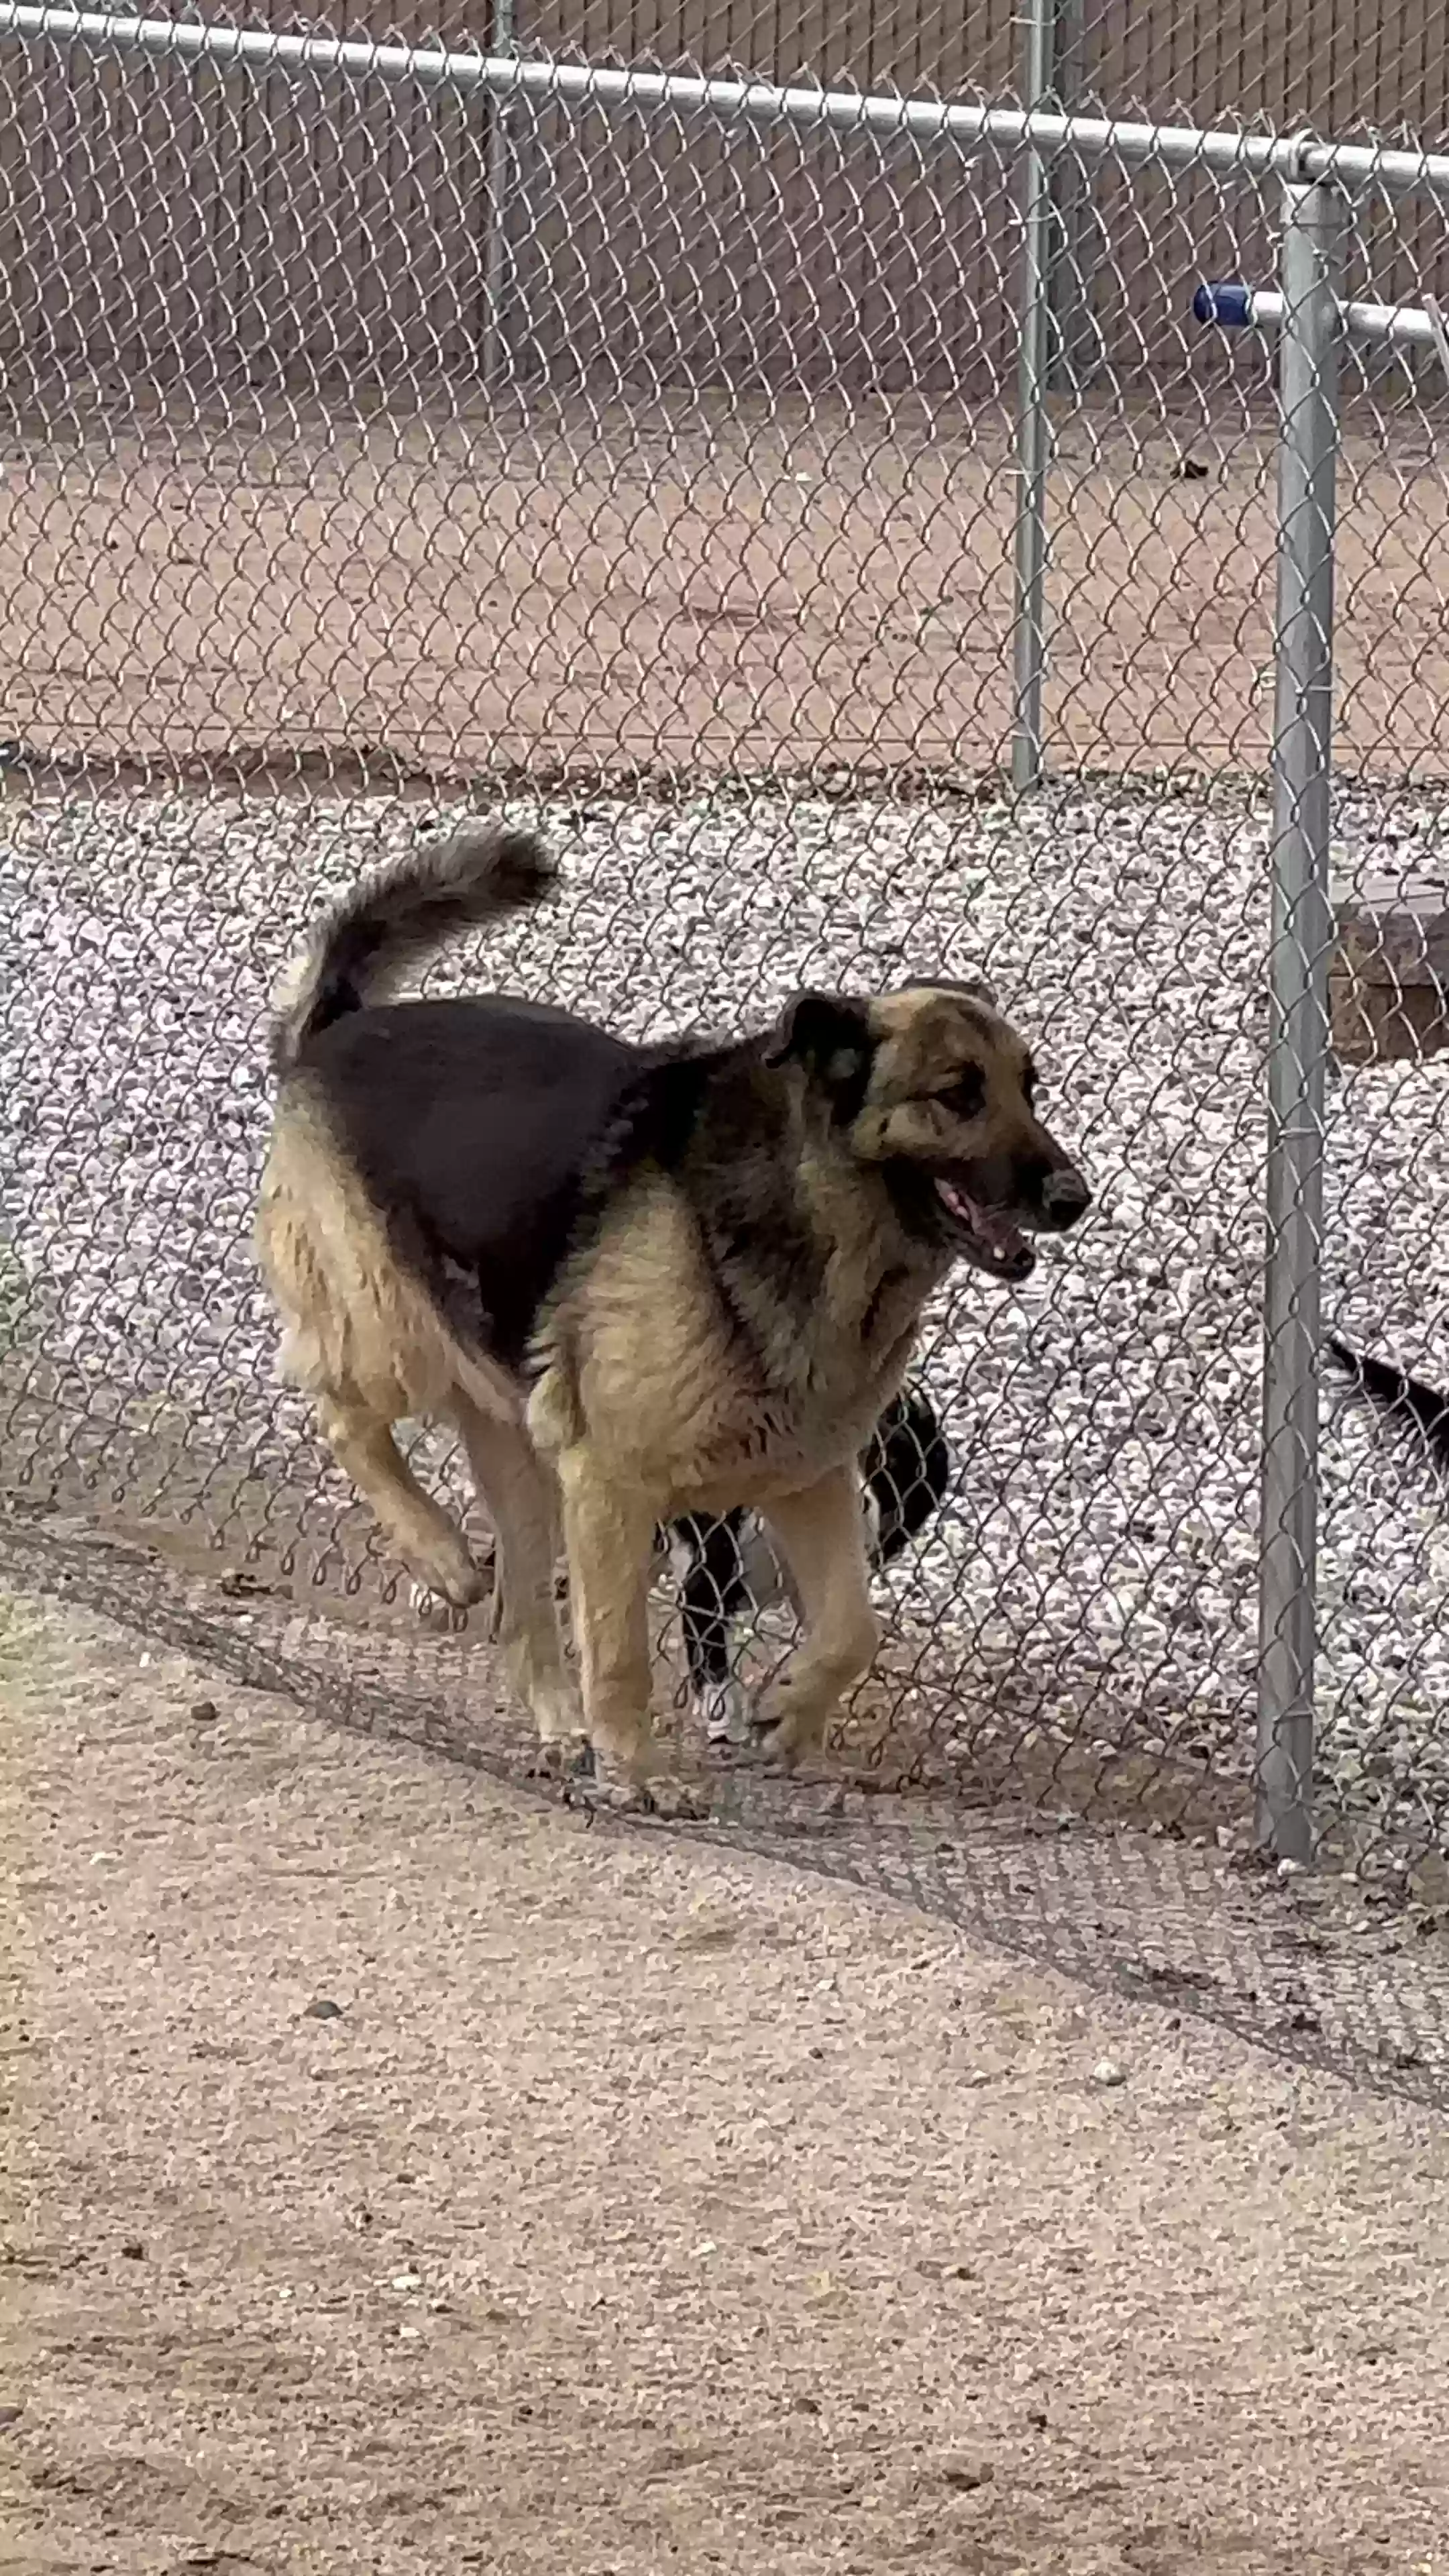 adoptable Dog in Hesperia,CA named Gracie